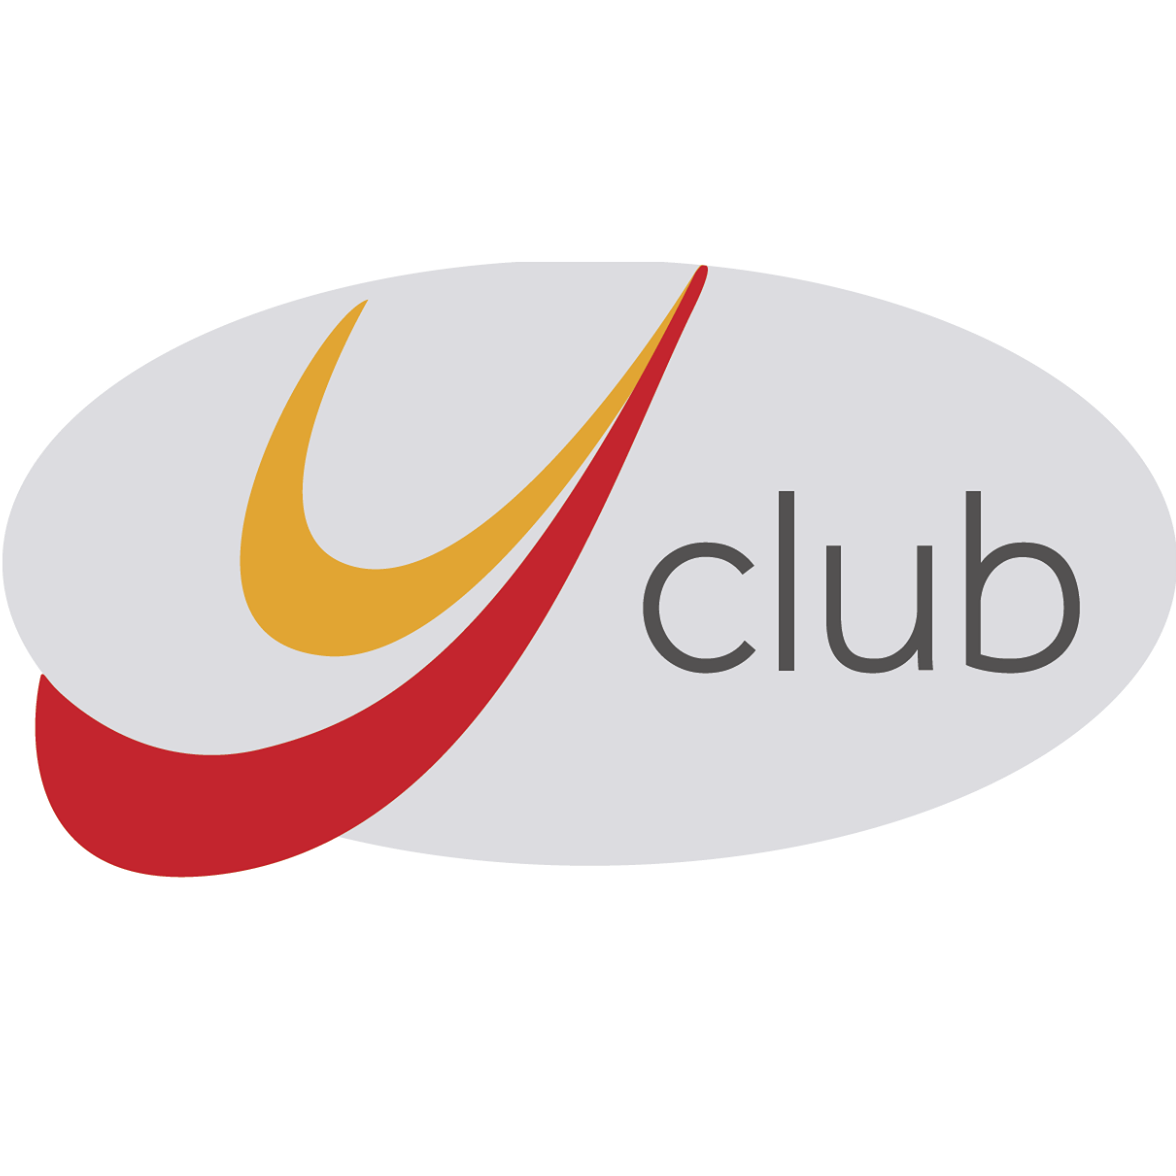 Y Club Manchester Logo